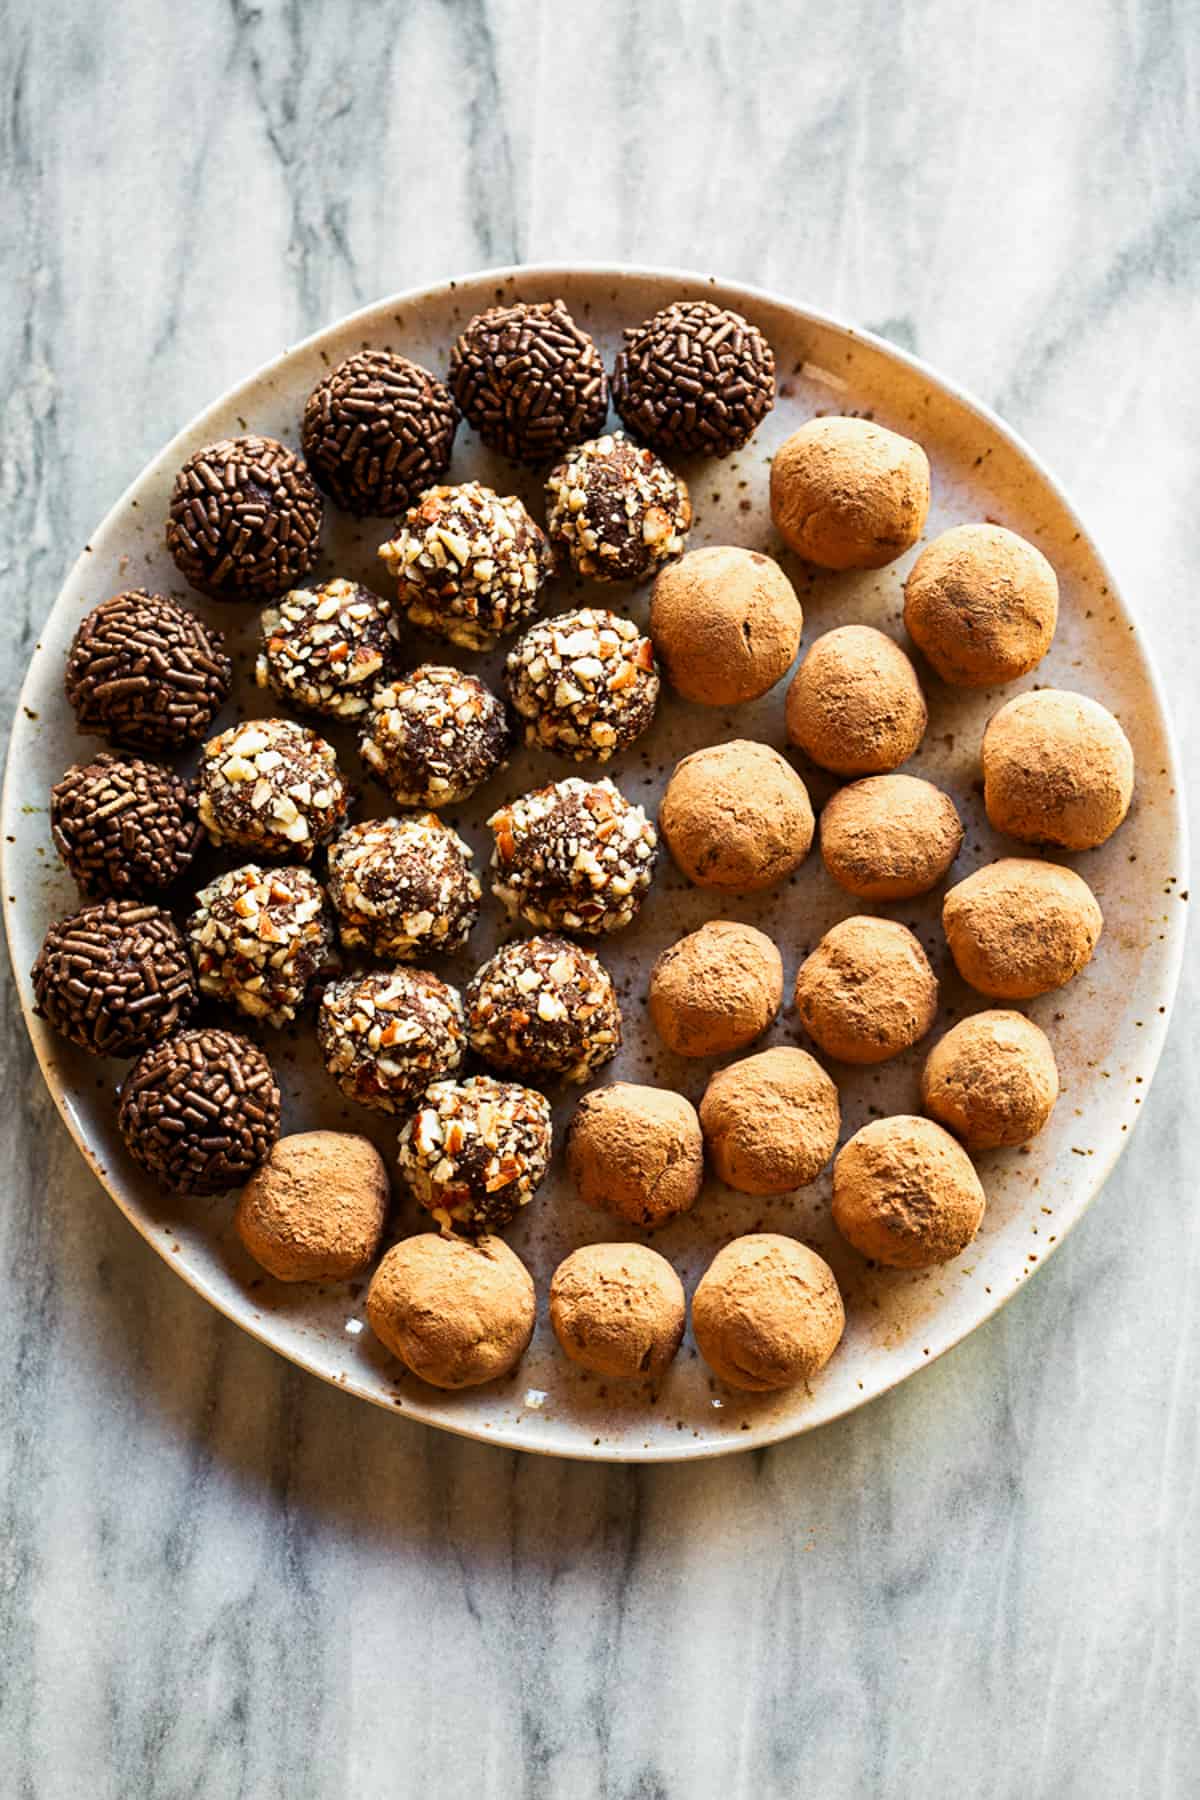 An assortment of holiday truffles on a platter.